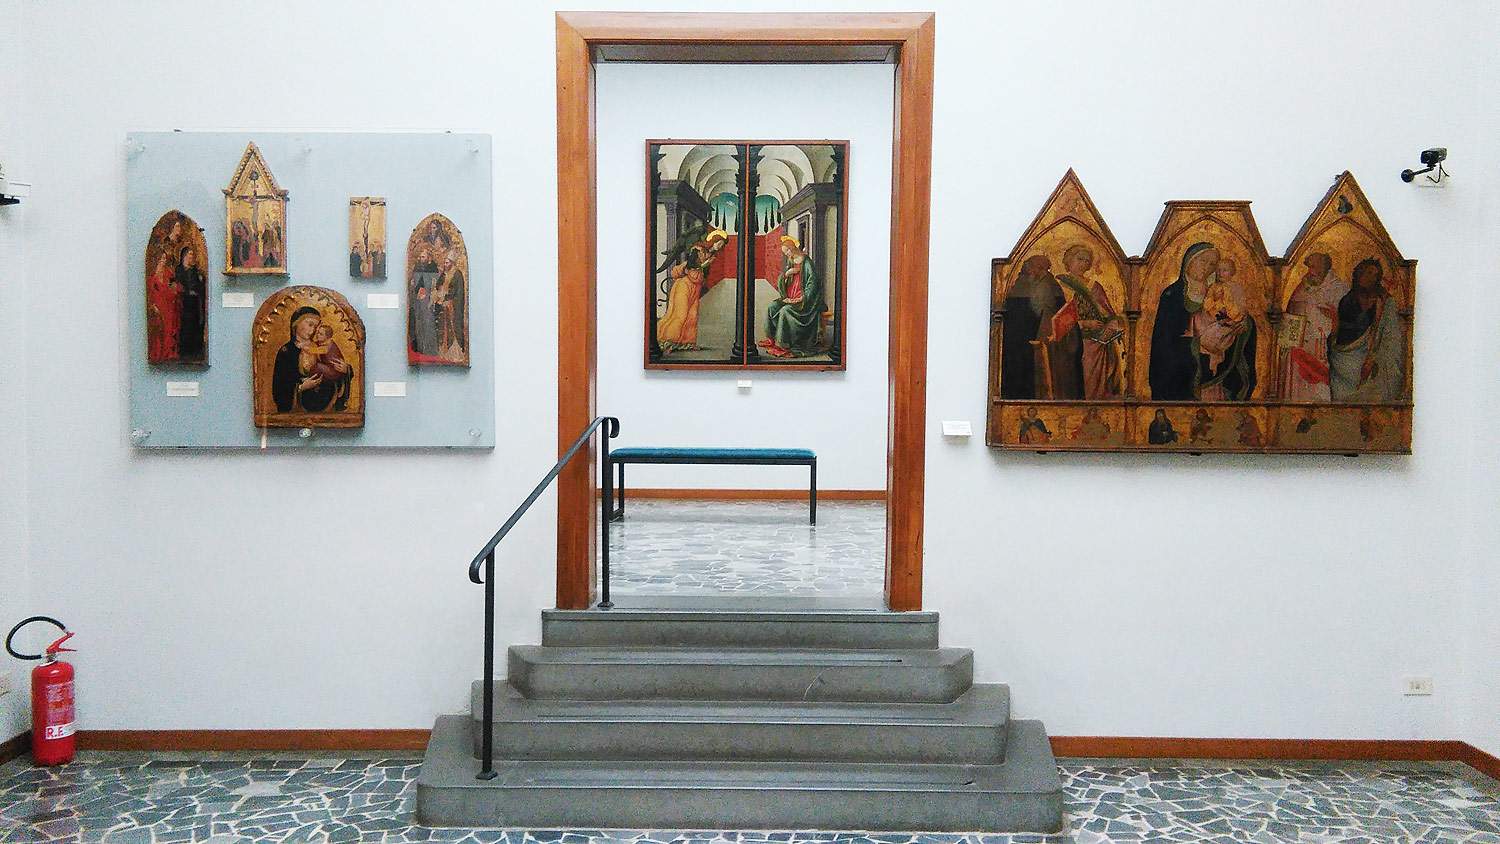 Les musées d'Empoli cherchent un directeur : concours pour les spécialistes du patrimoine culturel